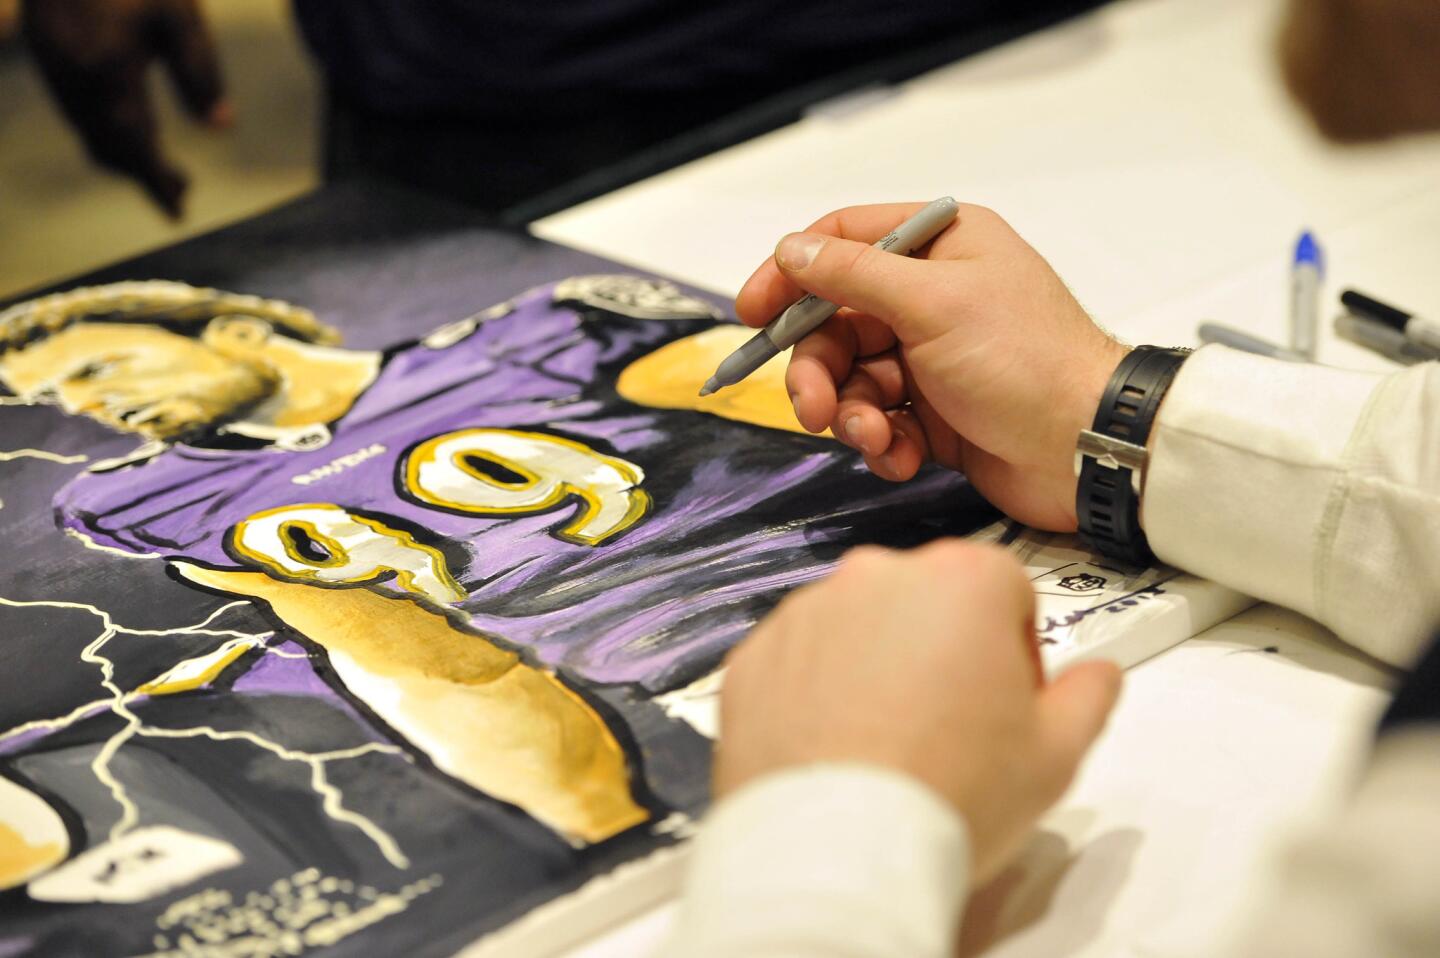 Ravens sign autographs